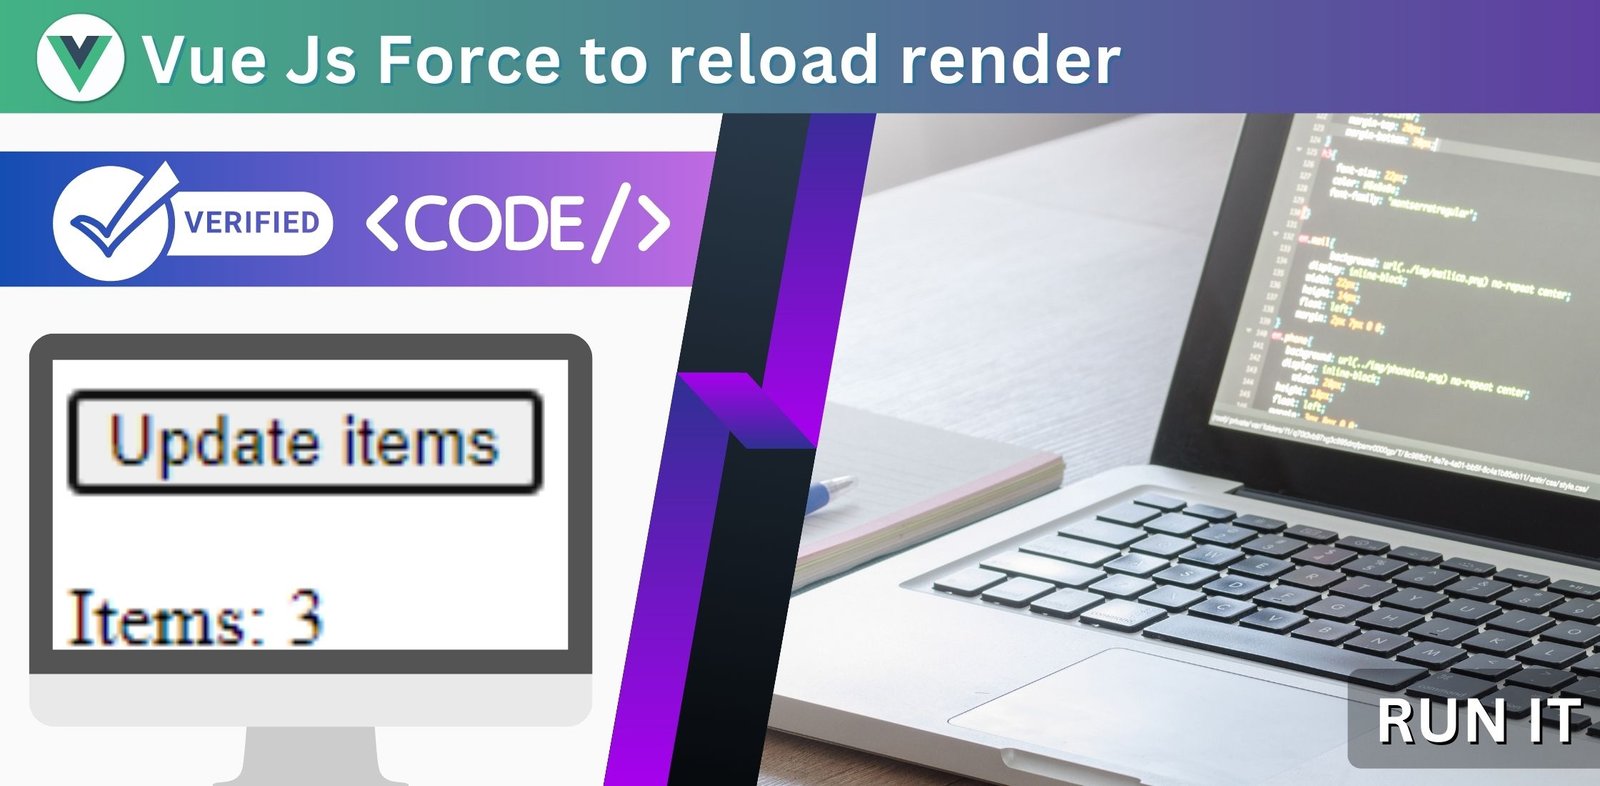 Vue Js Force to reload render